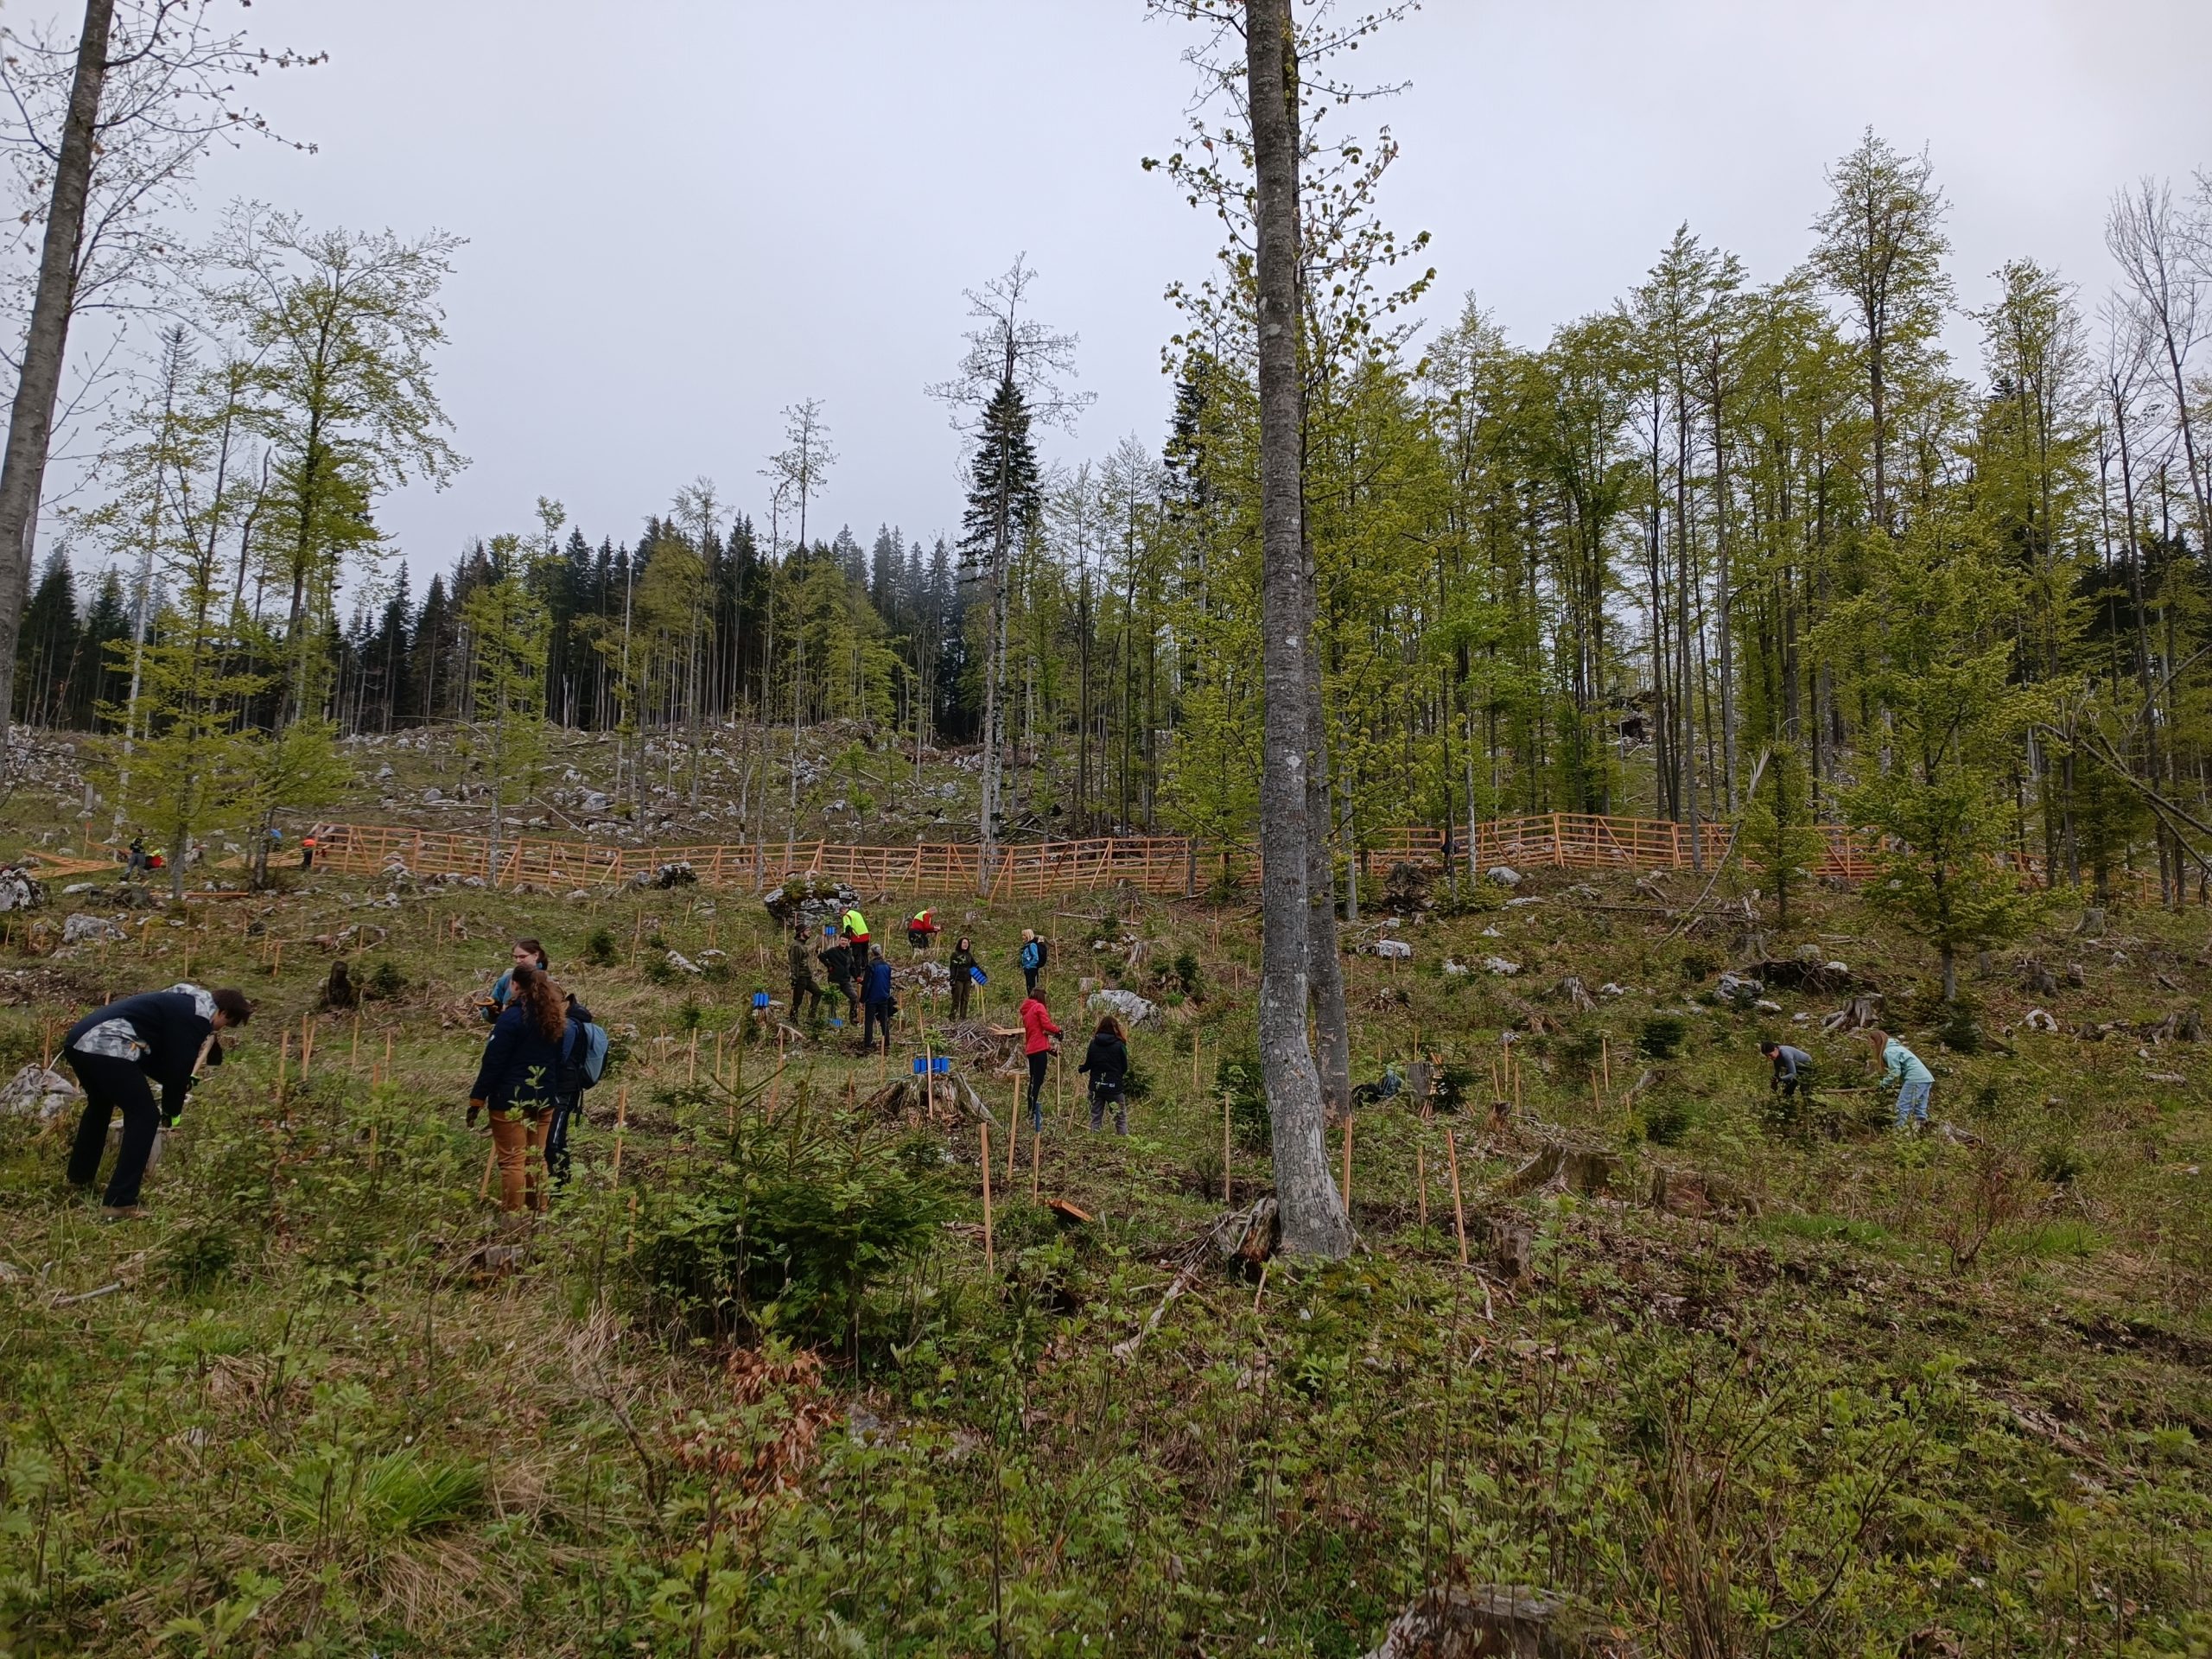 Nepohgozdeno pobočje sredi gozda, obdano z leseno ograjo in skupina ljudi, ki sadi mlade iglavce